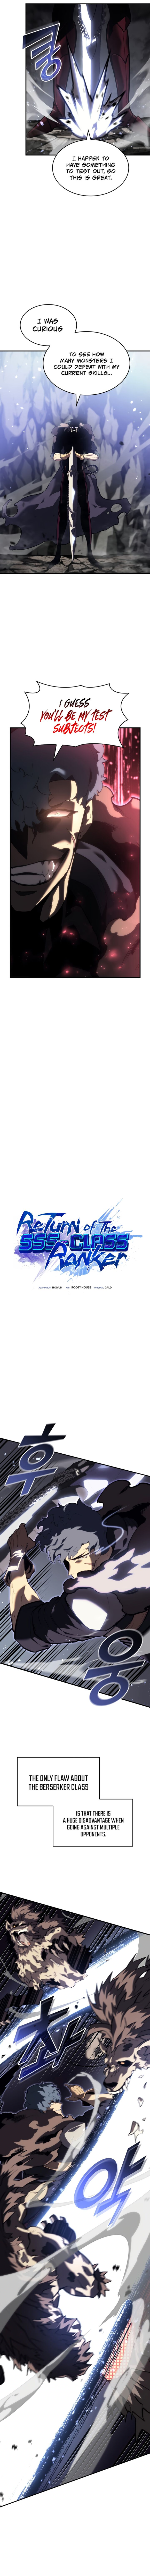 return_of_the_sss_class_ranker_54_5